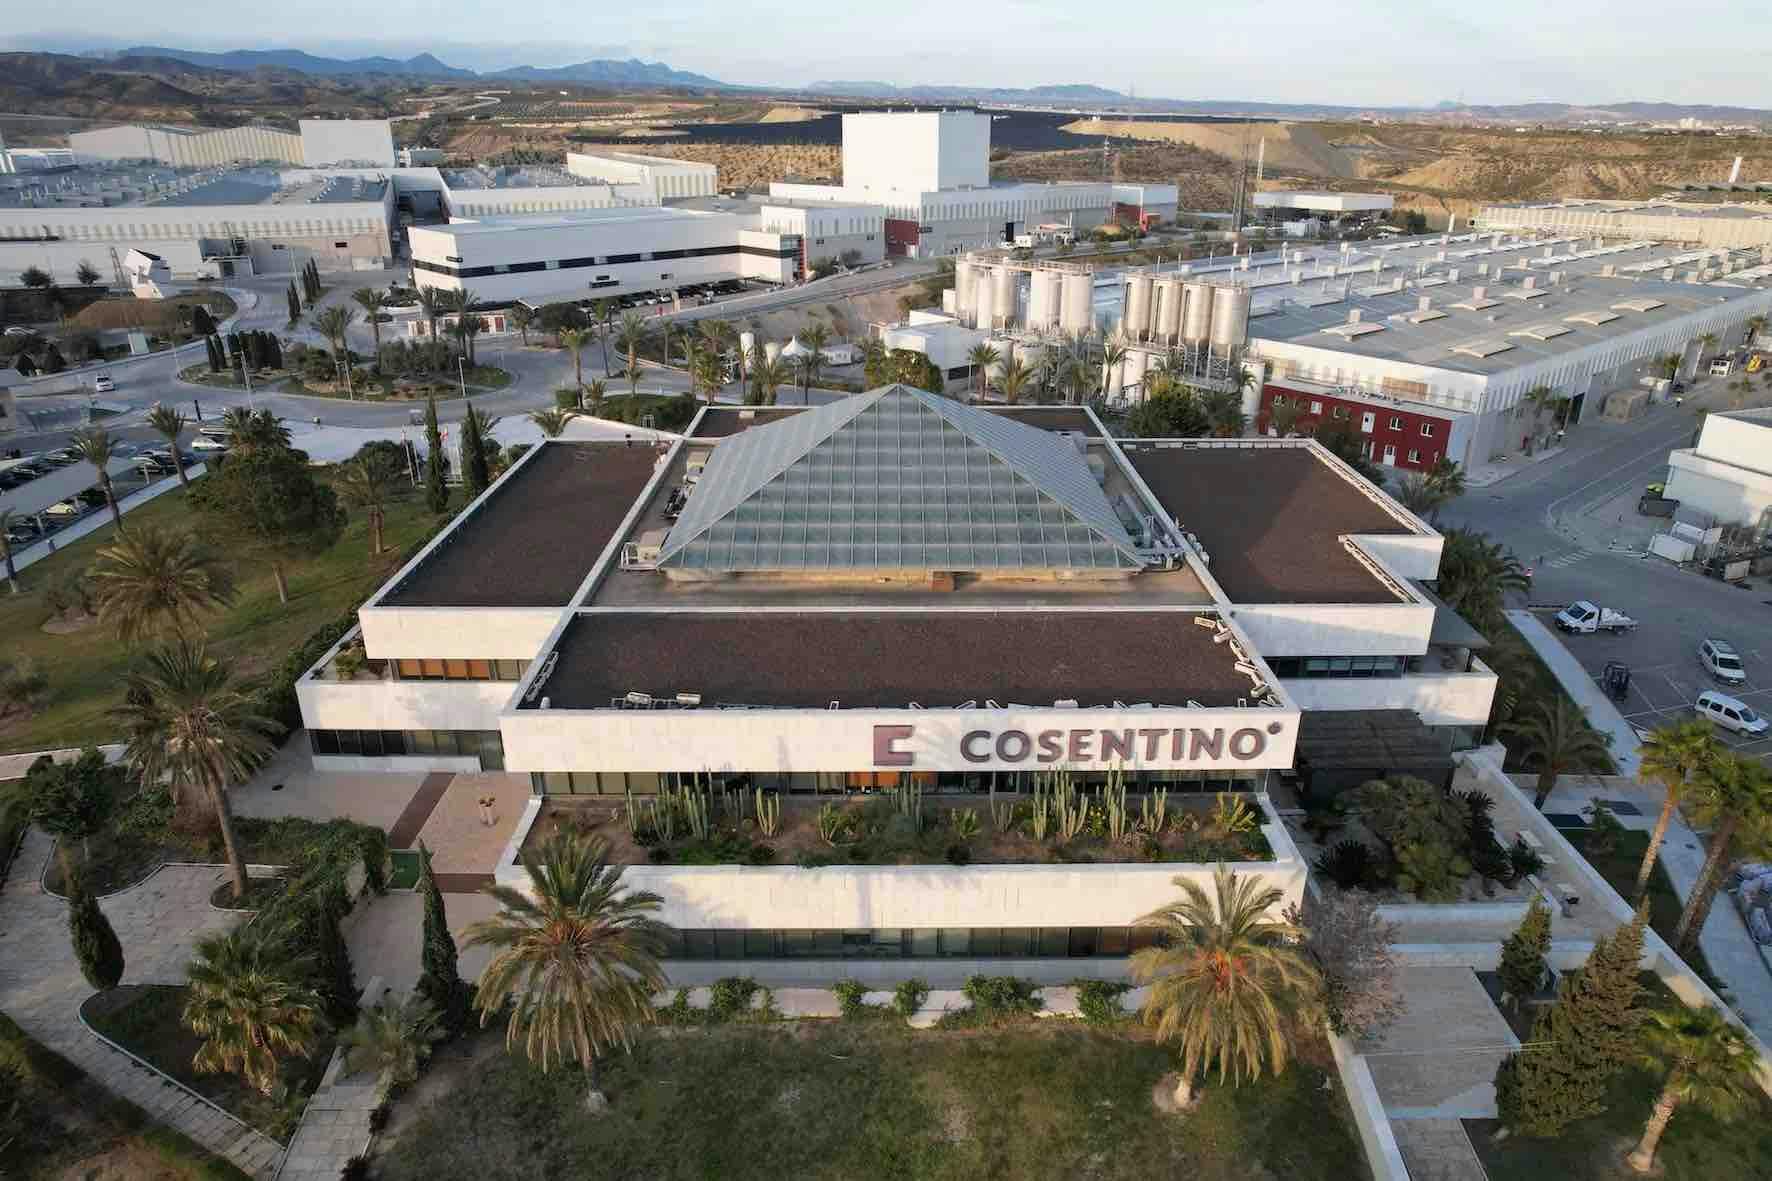 Image 81 of Parque Industrial Cosentino vista aerea oficinas d 1.jpg?auto=format%2Ccompress&ixlib=php 3.3 in Inspiration - Cosentino